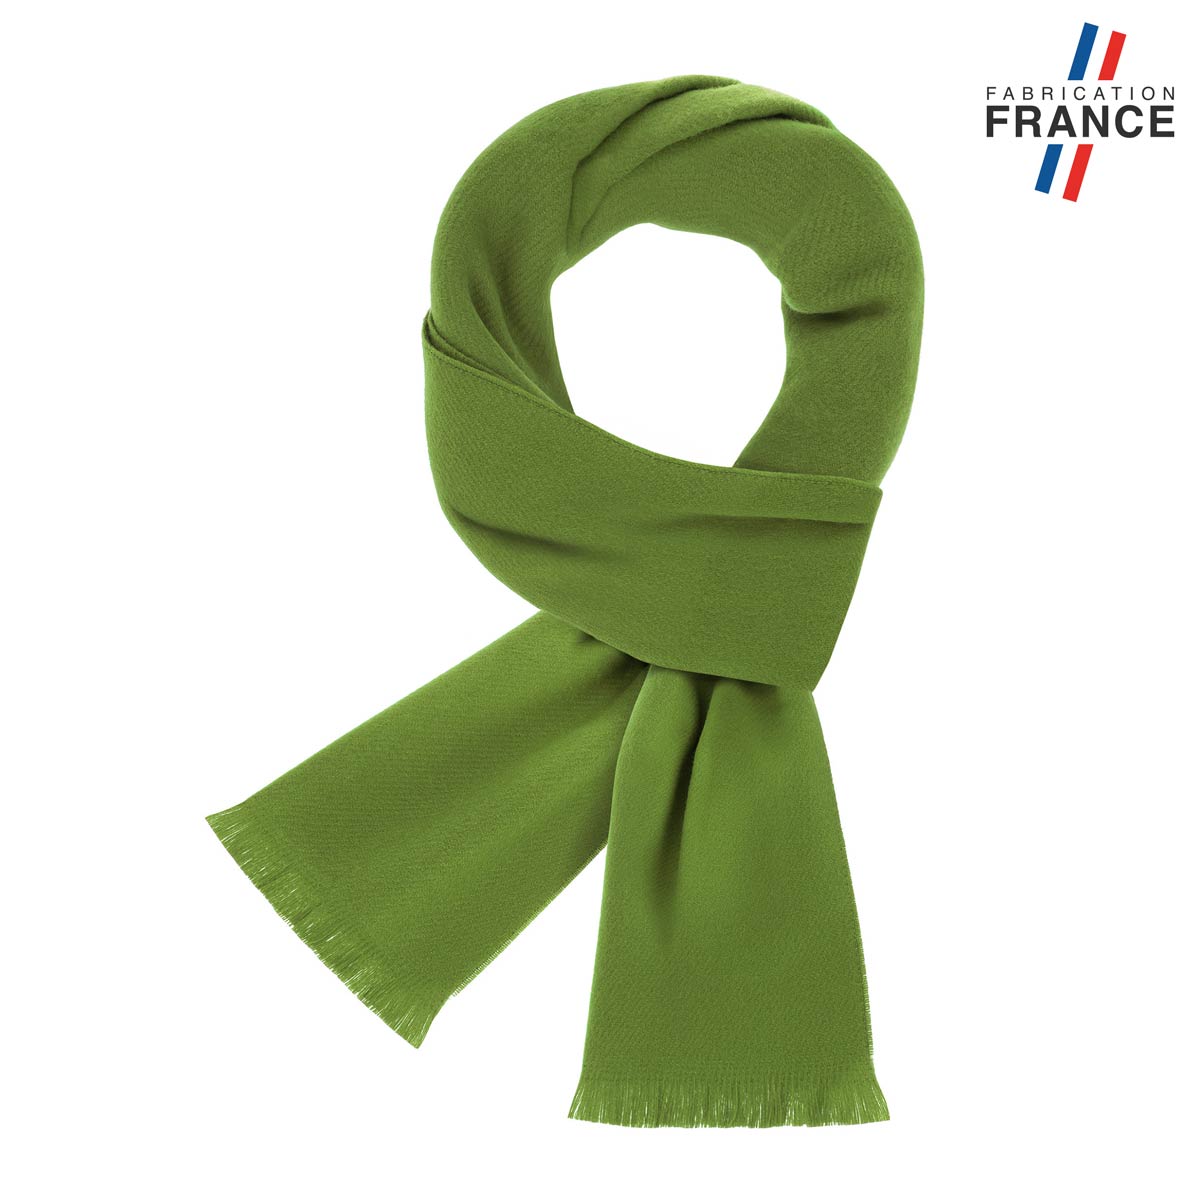 Echarpe-vert-anis-unie-femme-homme-franges-fabriquee-en-france--AT-06552_F12-1FR